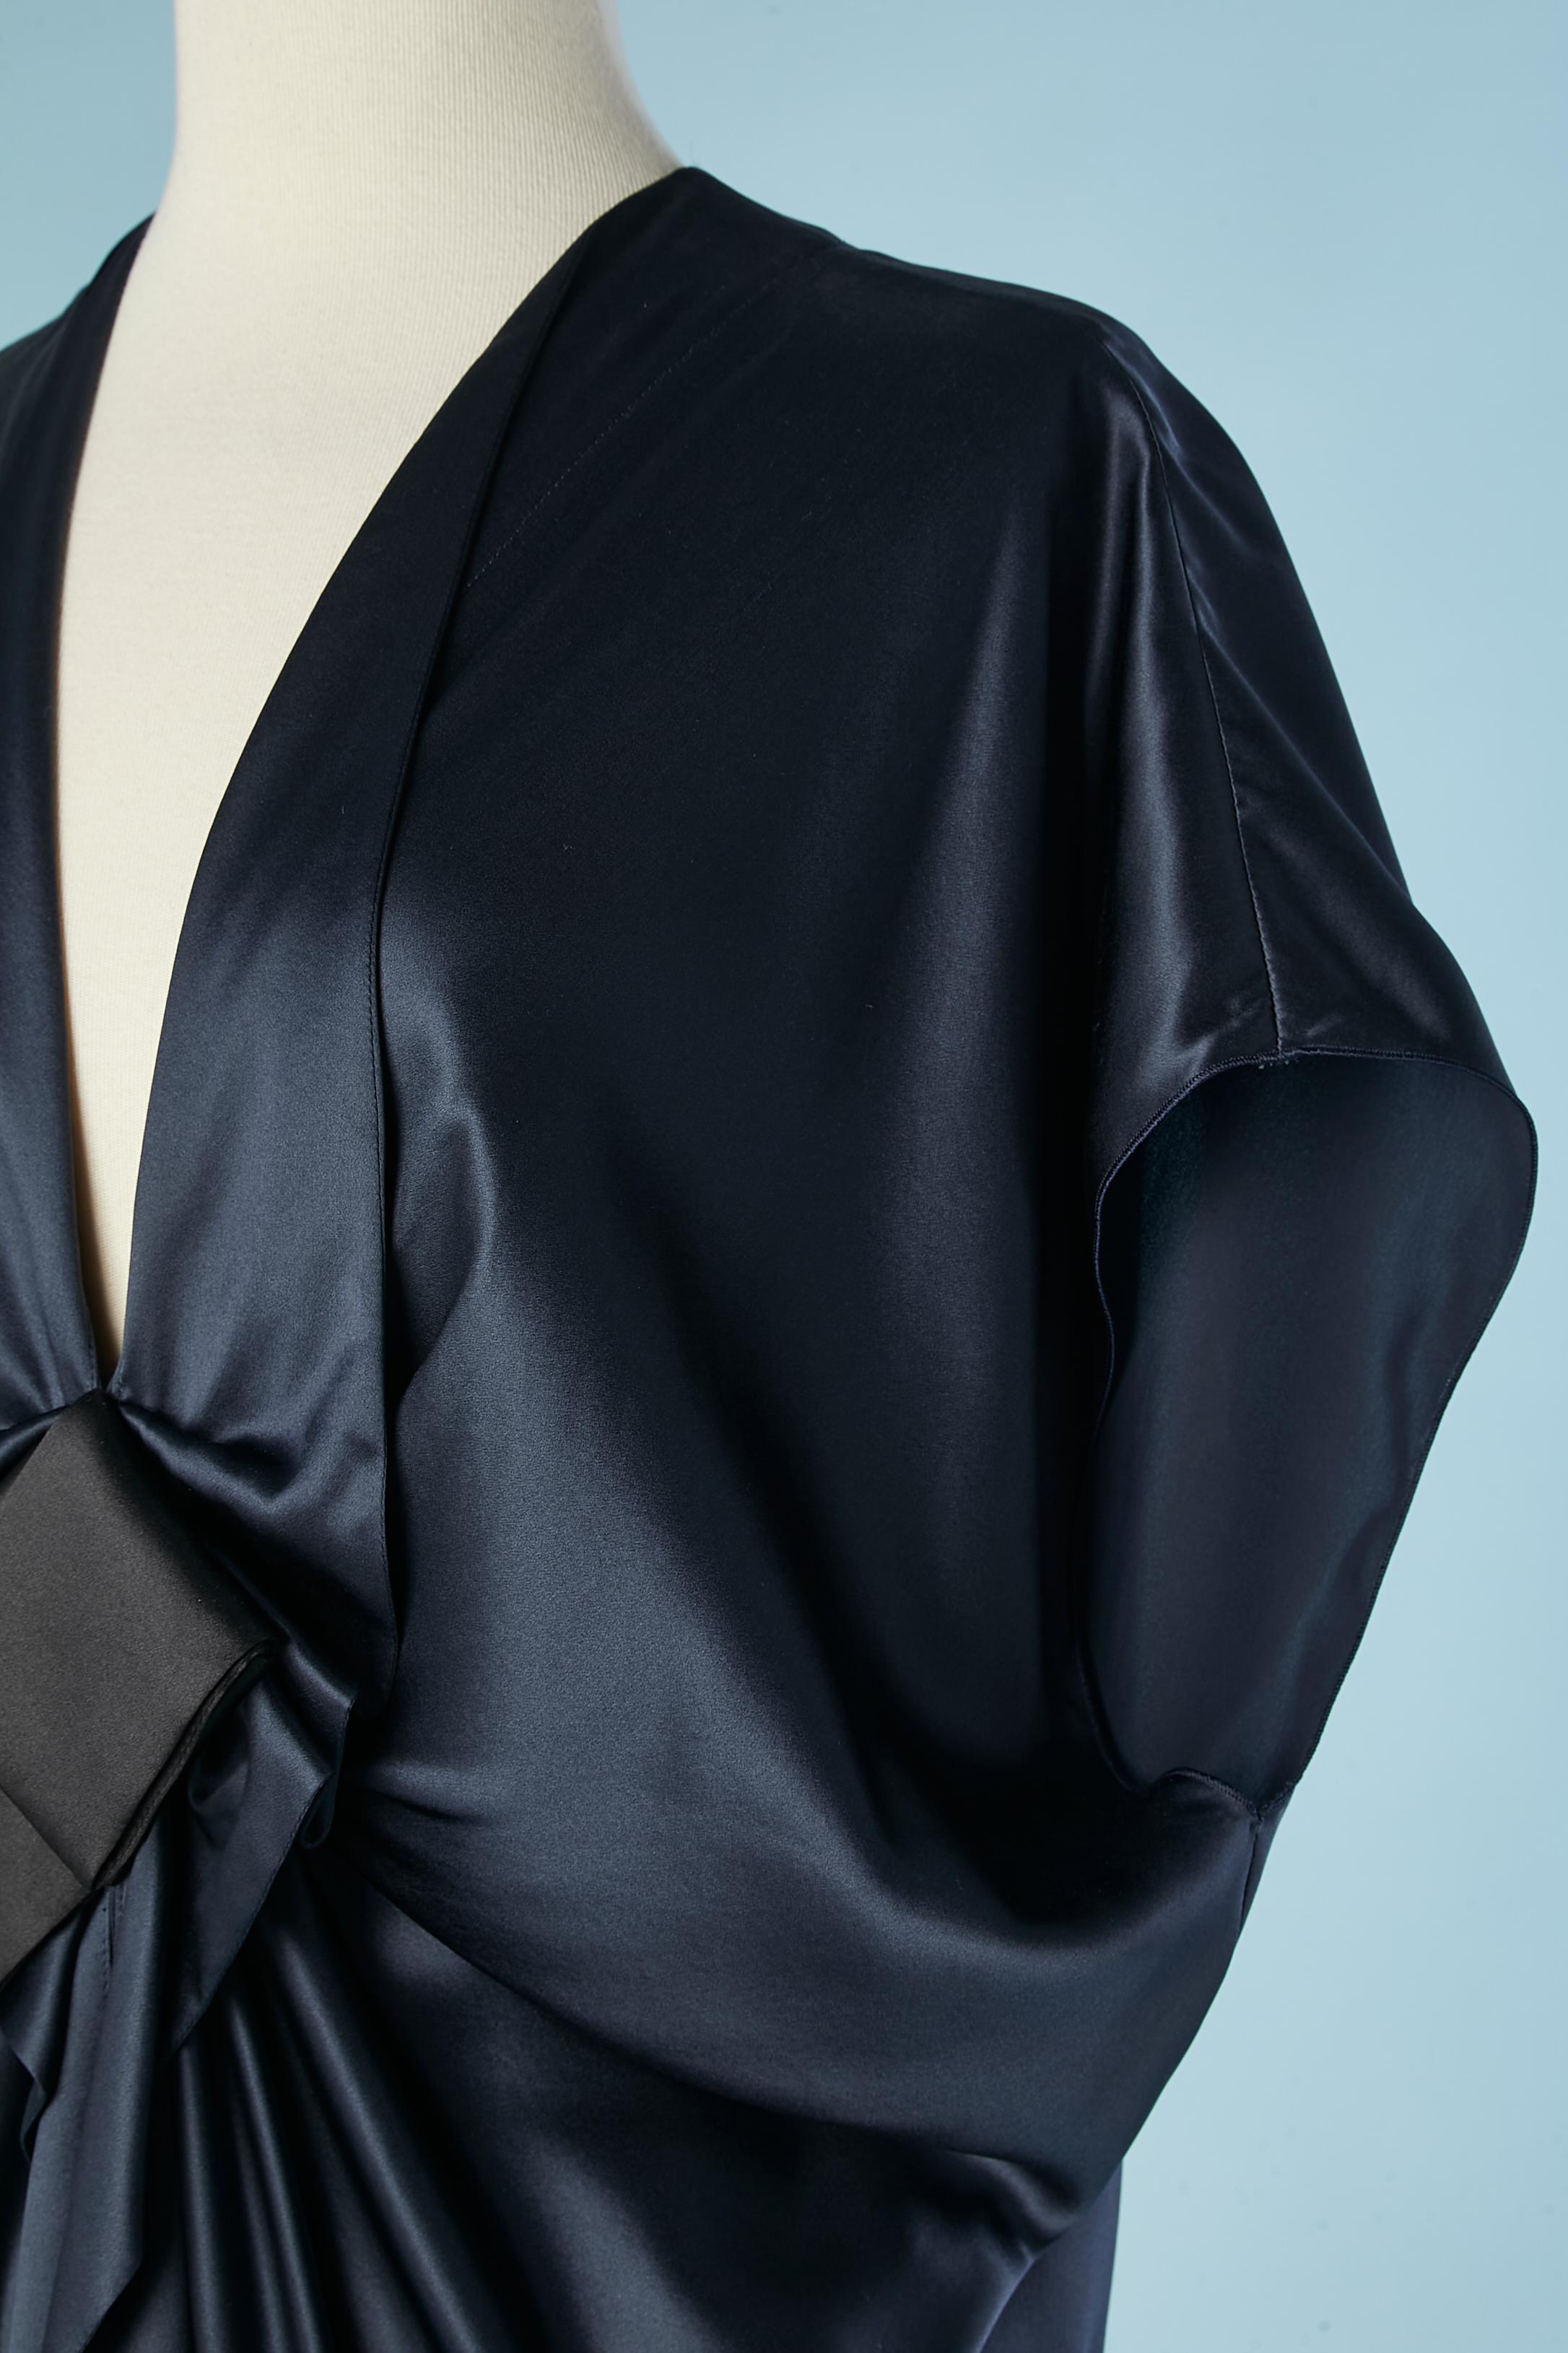 Marineblaues drapiertes Cocktailkleid mit schwarzer Satinschleife. Schlitz im unteren Teil des Kleides in der vorderen Mitte (Länge: 23 cm)
SIZE 38 (M) 